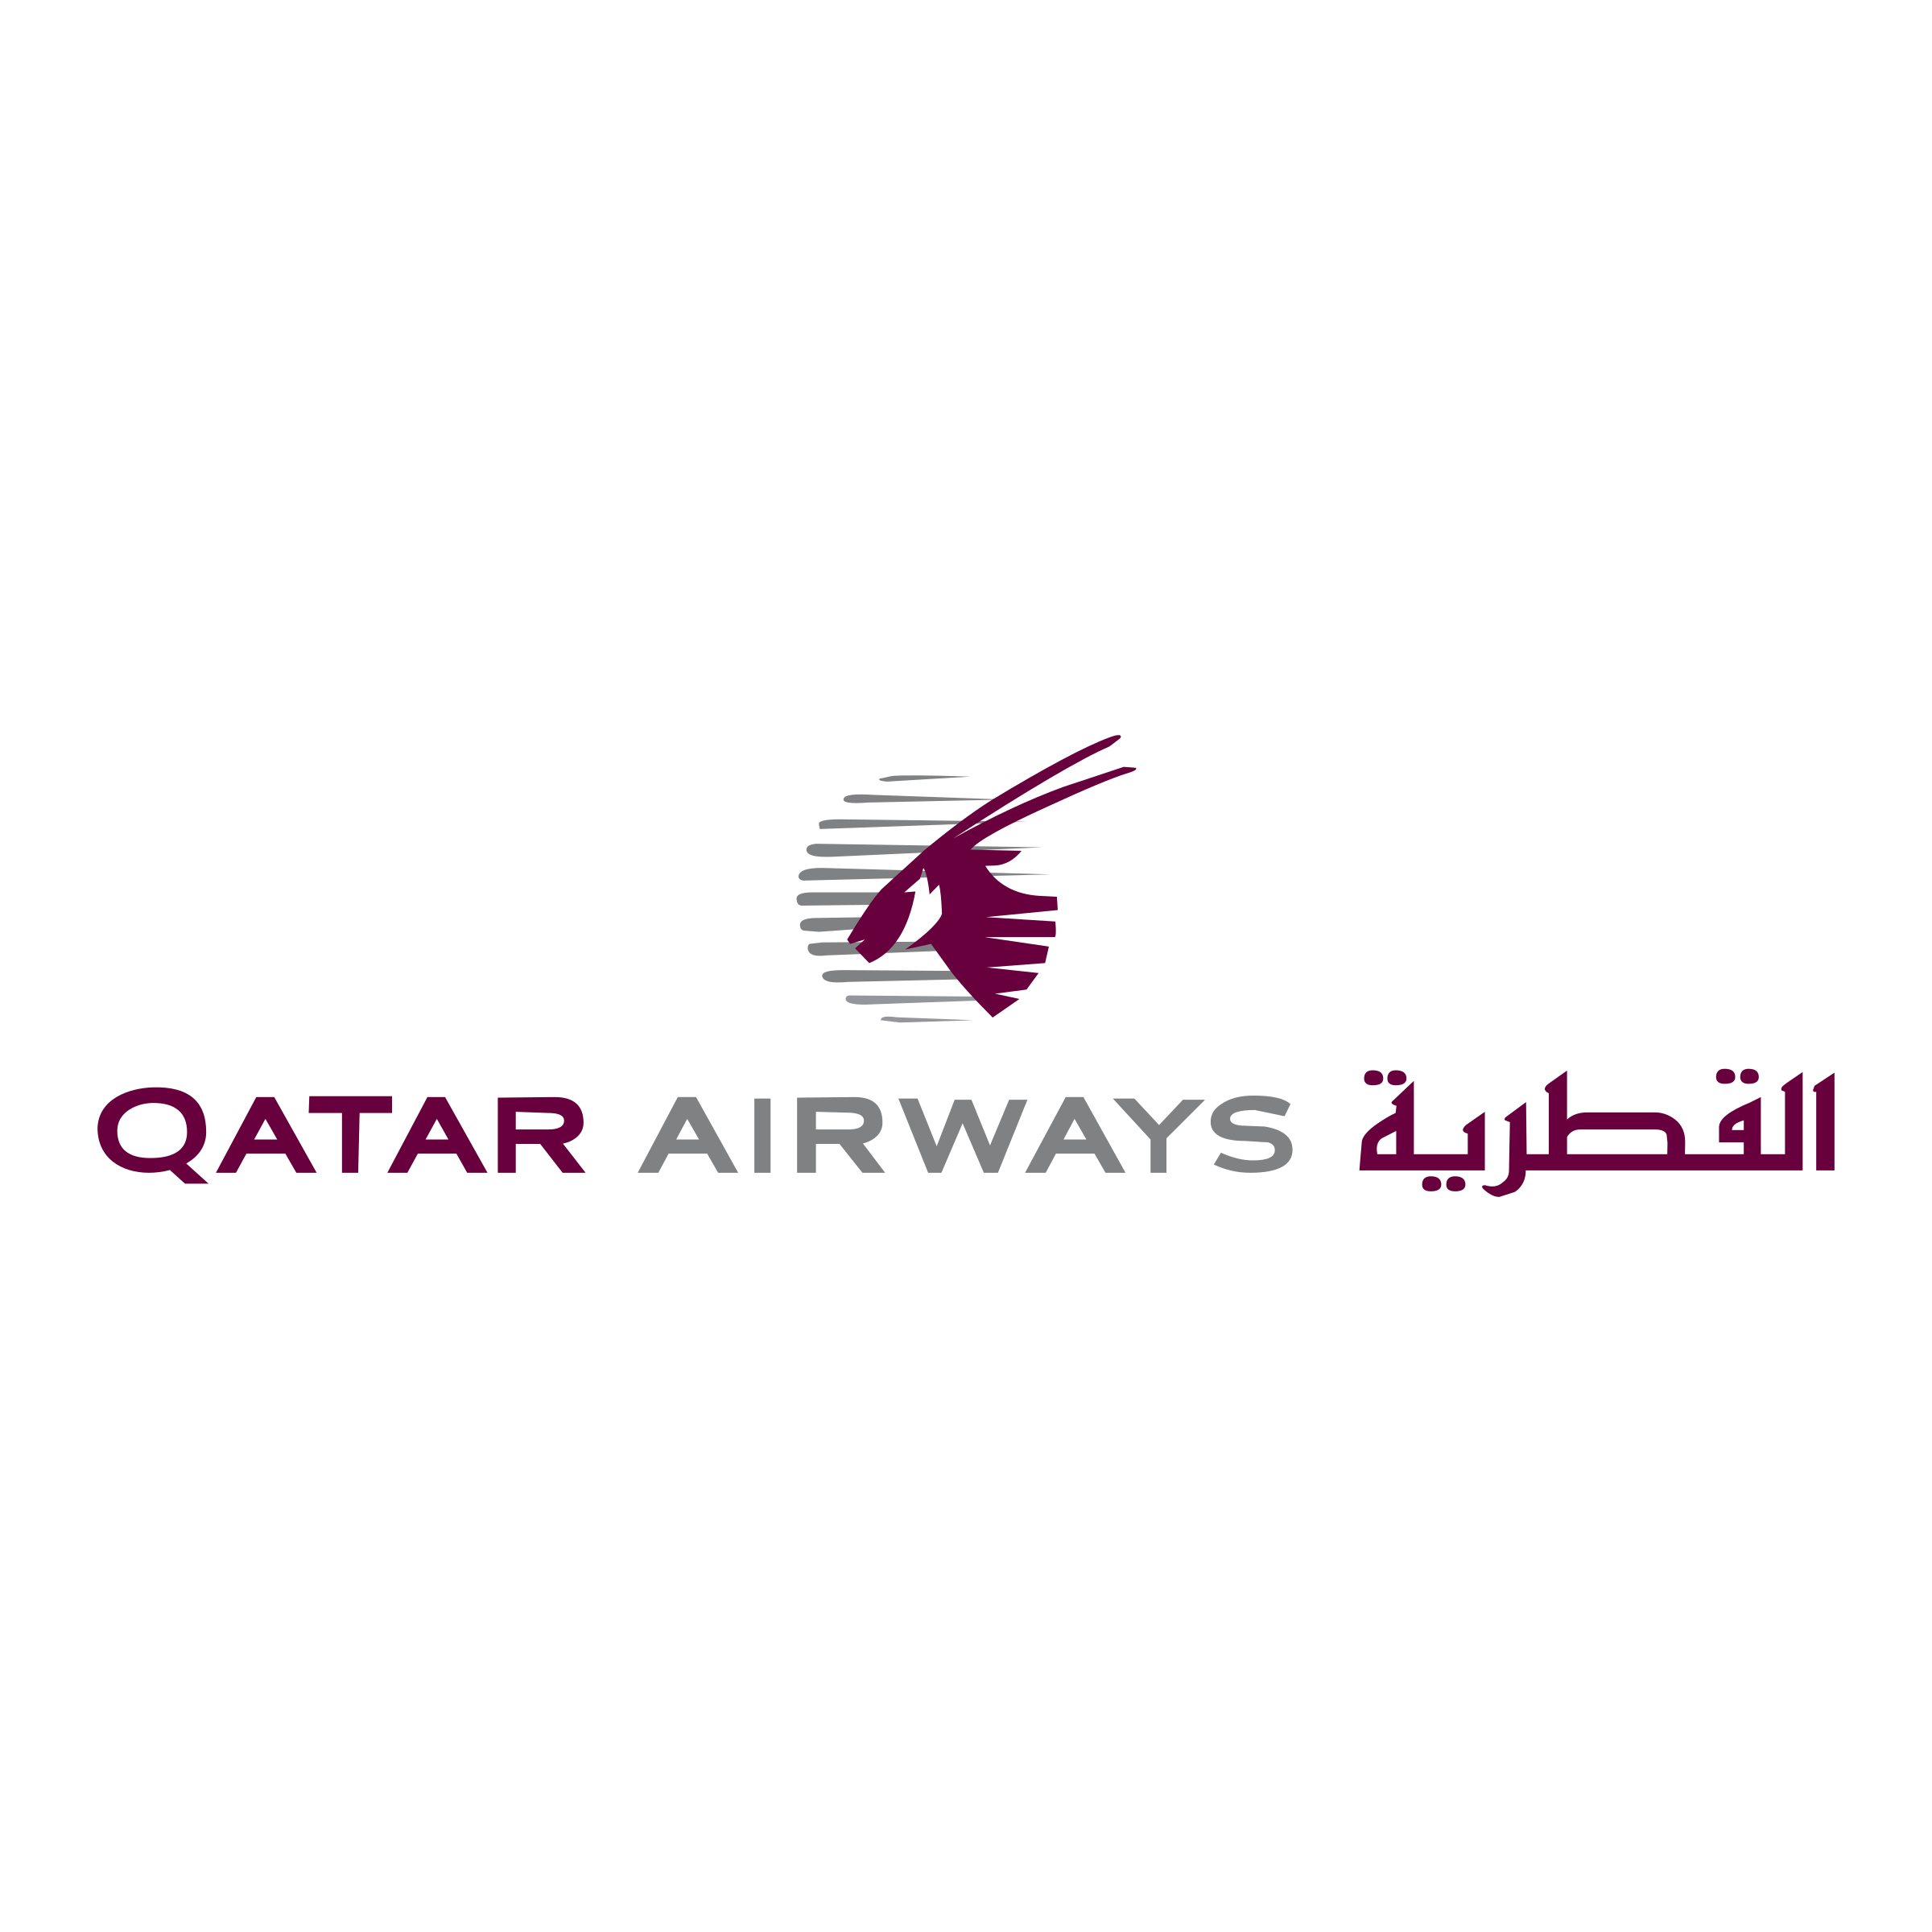 Qatar Airways Logo - Qatar Airways Logo PNG Transparent & SVG Vector - Freebie Supply